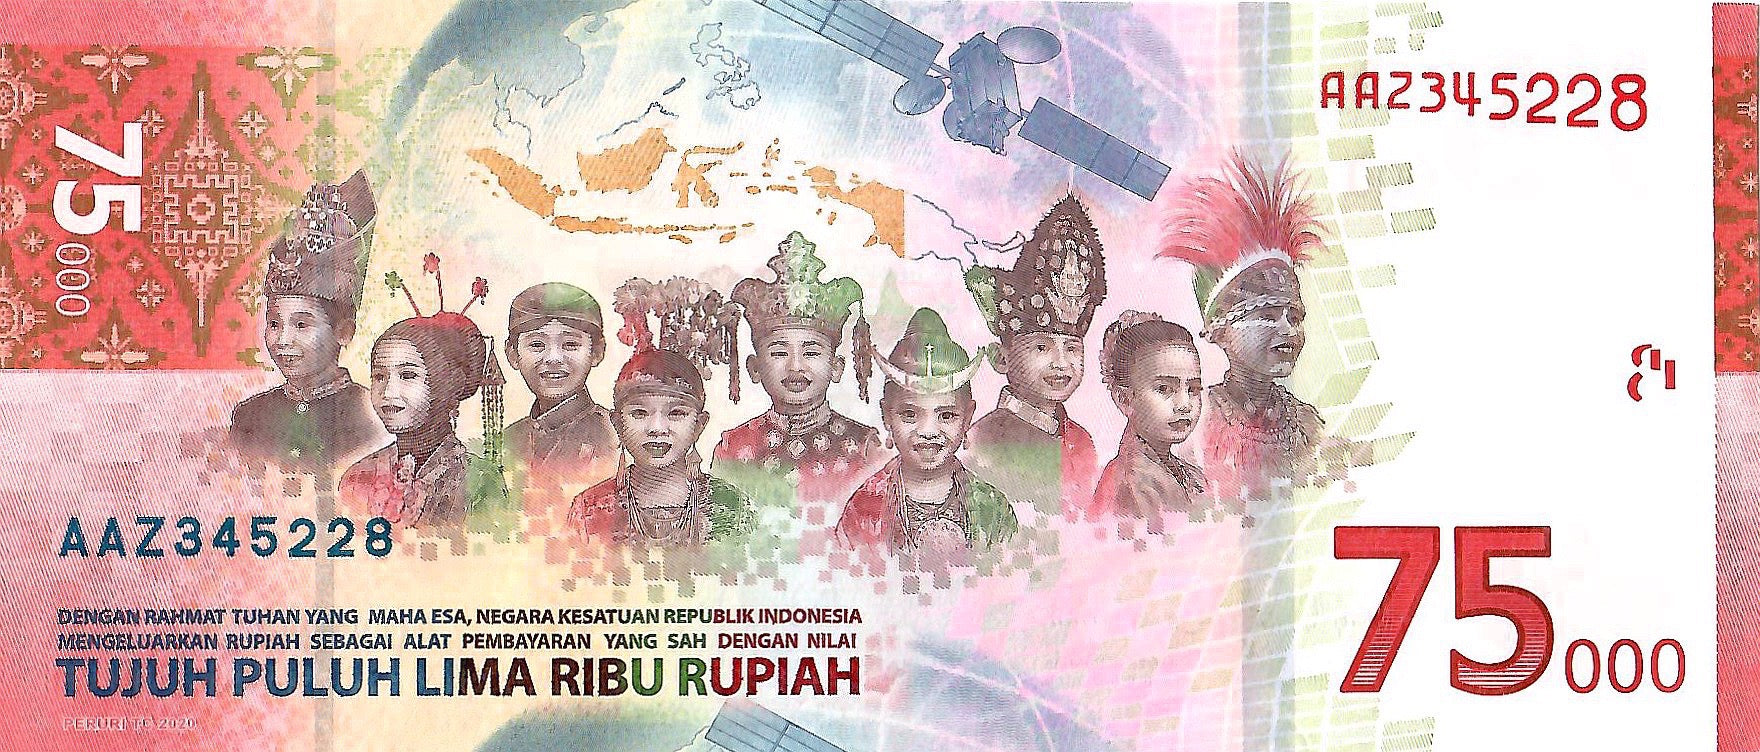 Indonesia 75,000 Rupiah, 2020, New UNC Commemorative